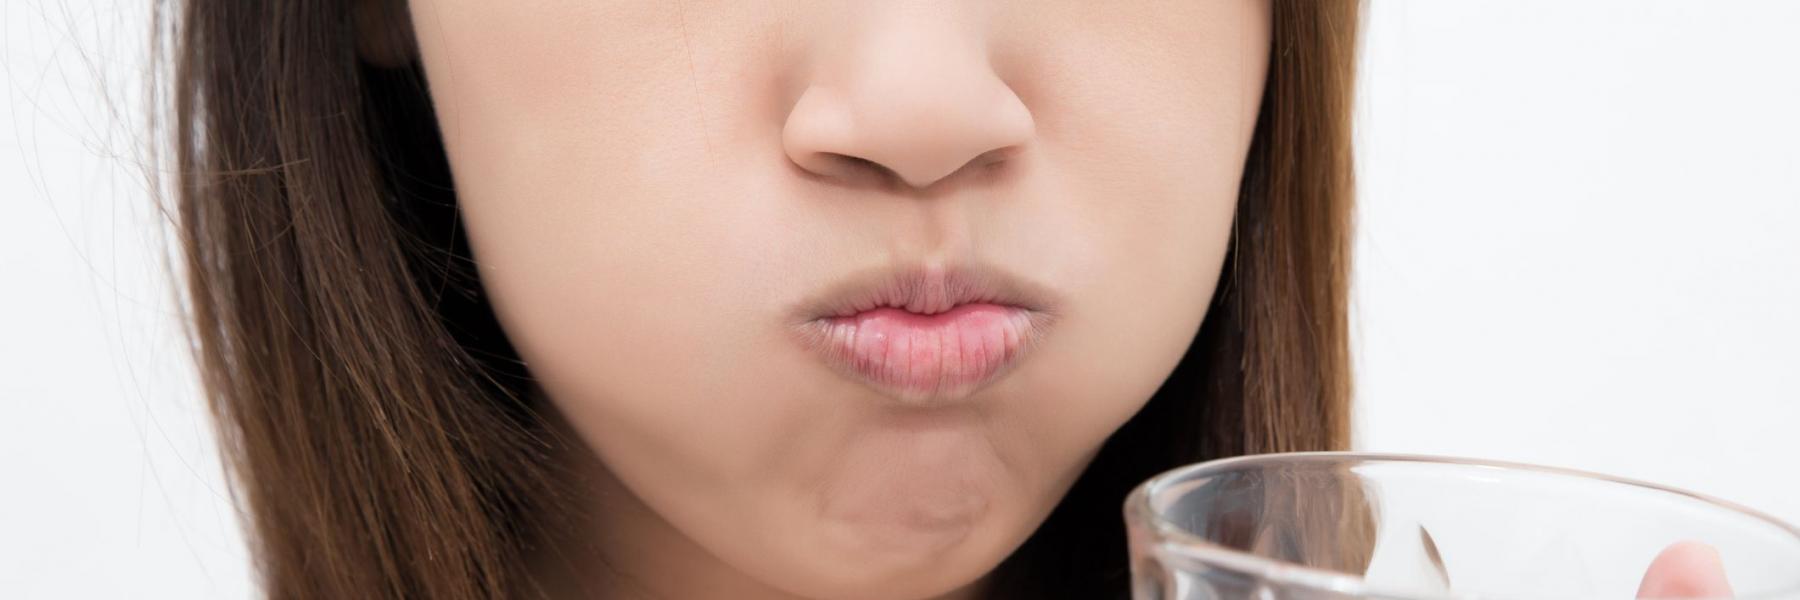 كيف تساعد المضمضة بالماء والملح في المحافظة على صحة الفم؟